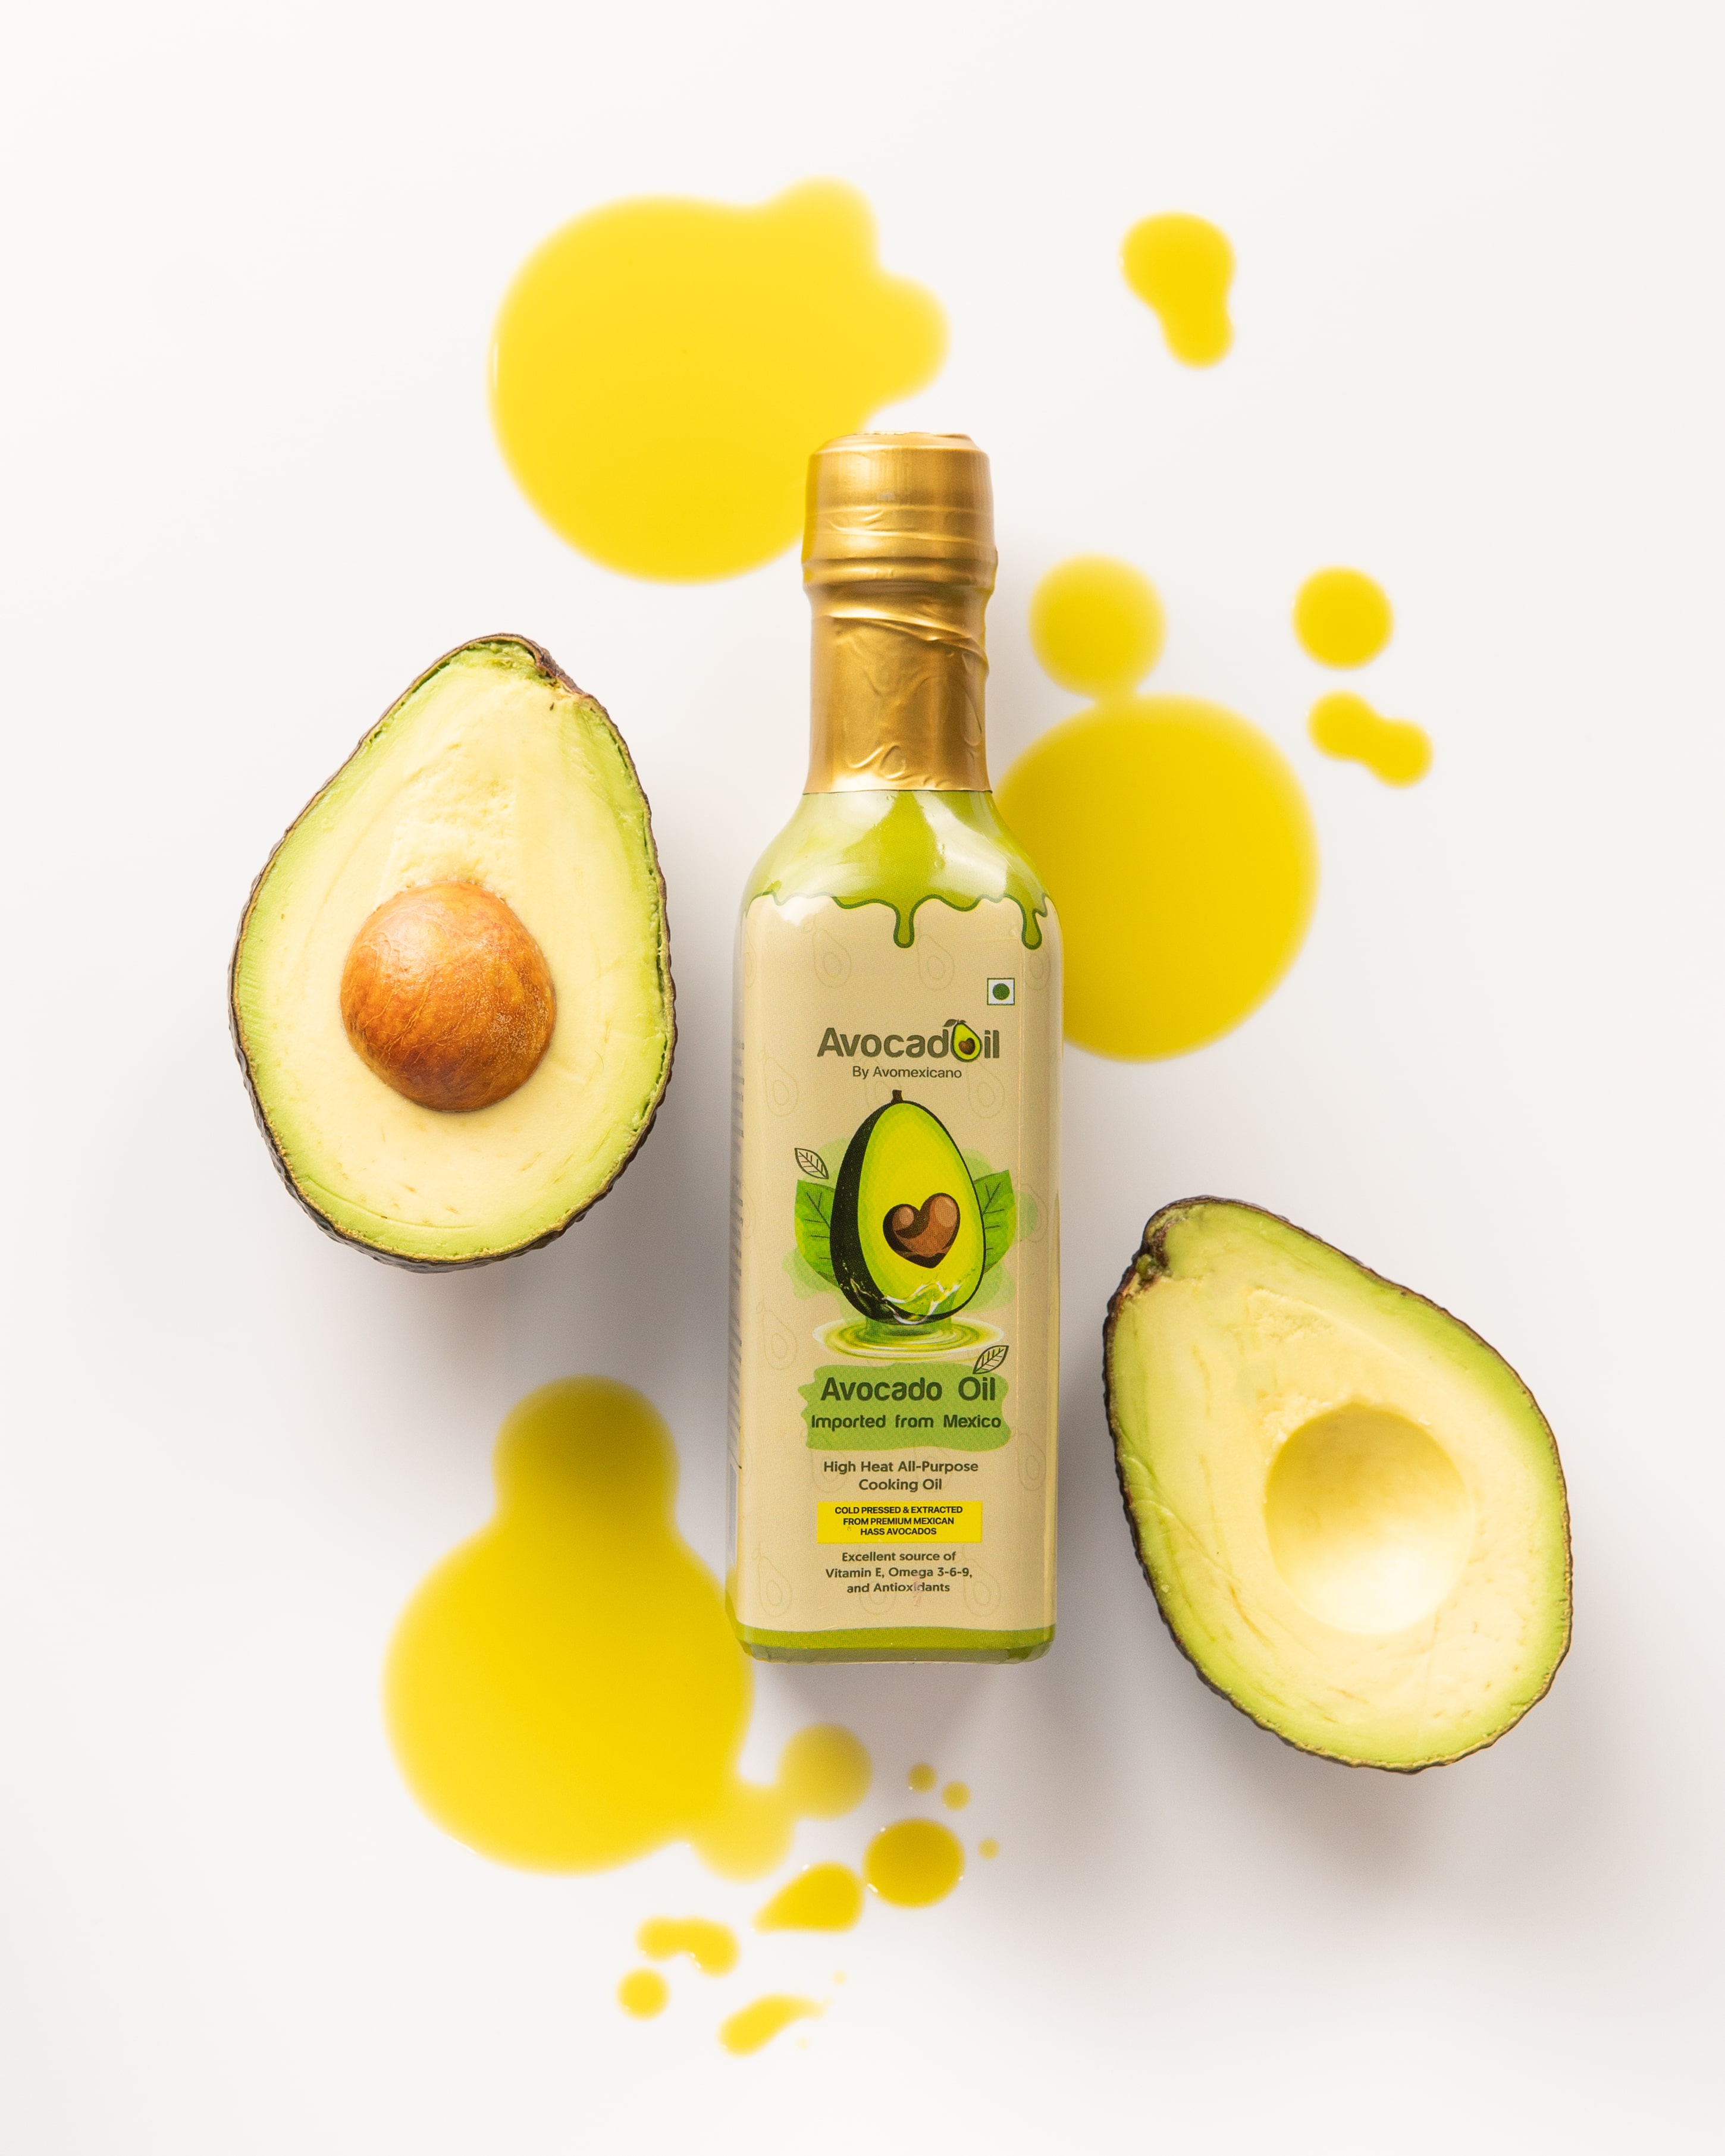 Avocado oil by Avomexicano